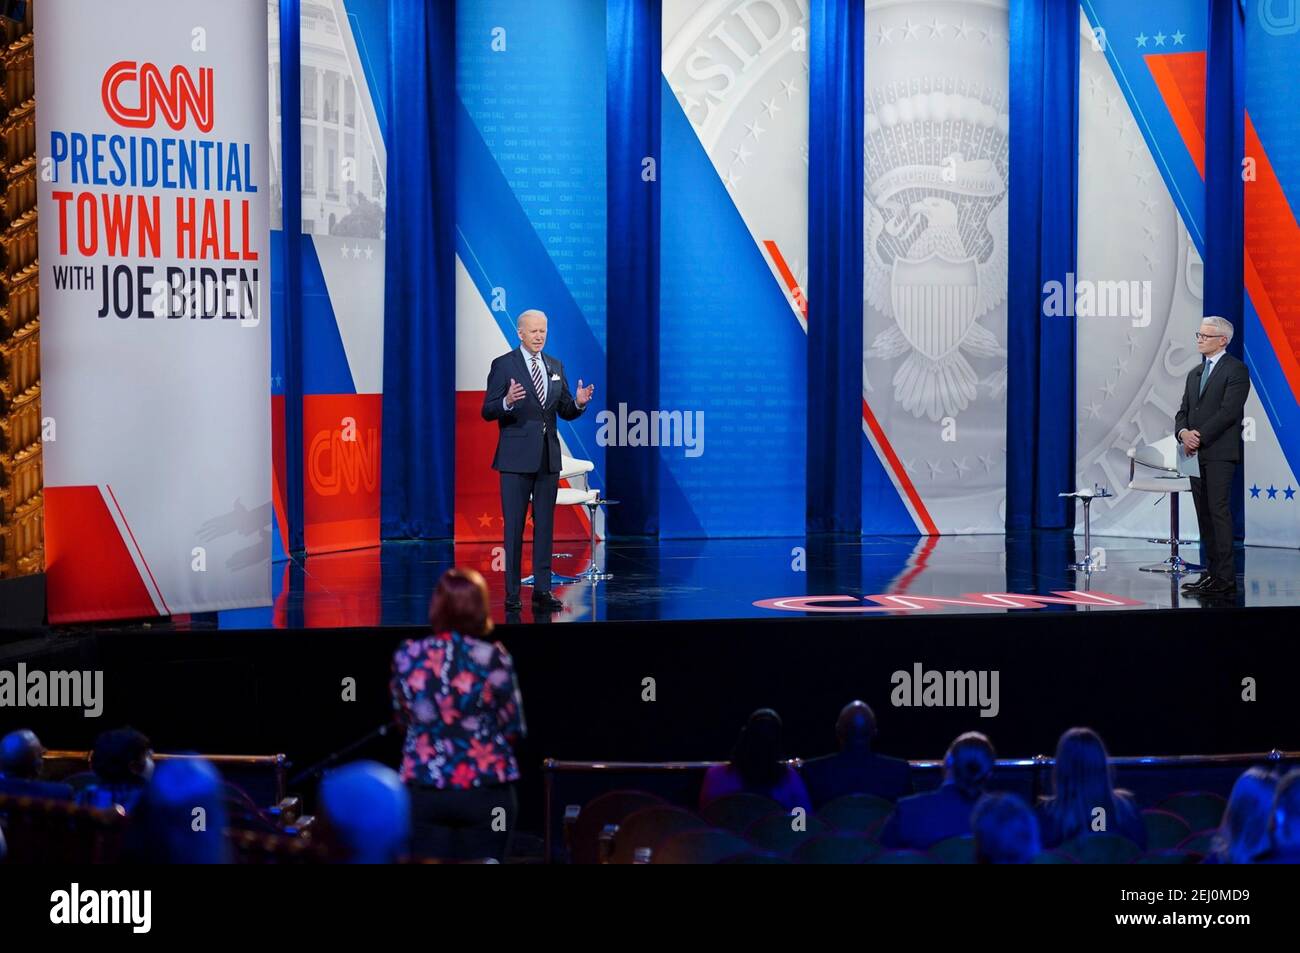 Joe Biden, président des États-Unis, participe à un événement de la mairie de CNN animé par Anderson Cooper au Pabst Theatre le 16 février 2021 à Milwaukee, Wisconsin. Banque D'Images